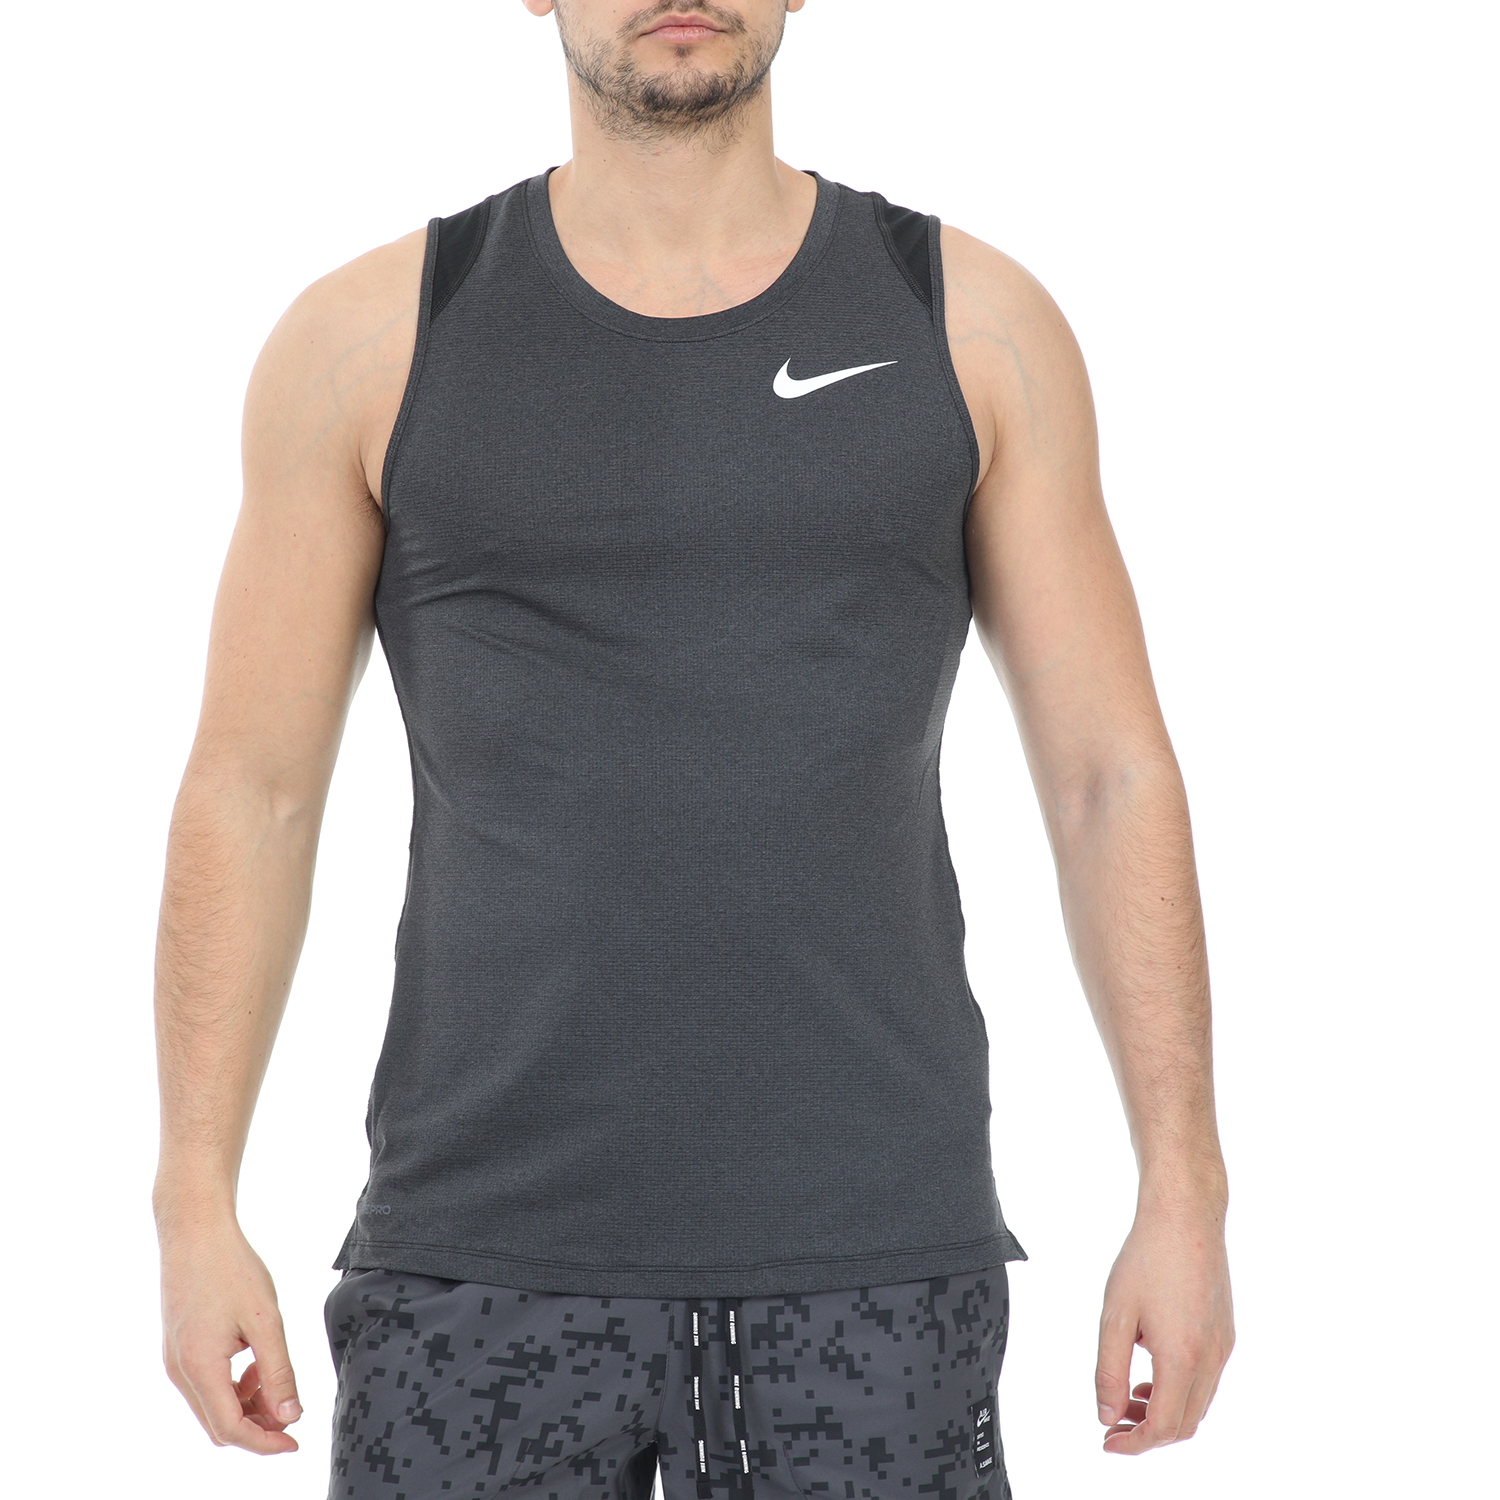 Ανδρικά/Ρούχα/Αθλητικά/T-shirt NIKE - Ανδρική αμάνικη μπλούζα NIKE NP BRT TANK μαύρη